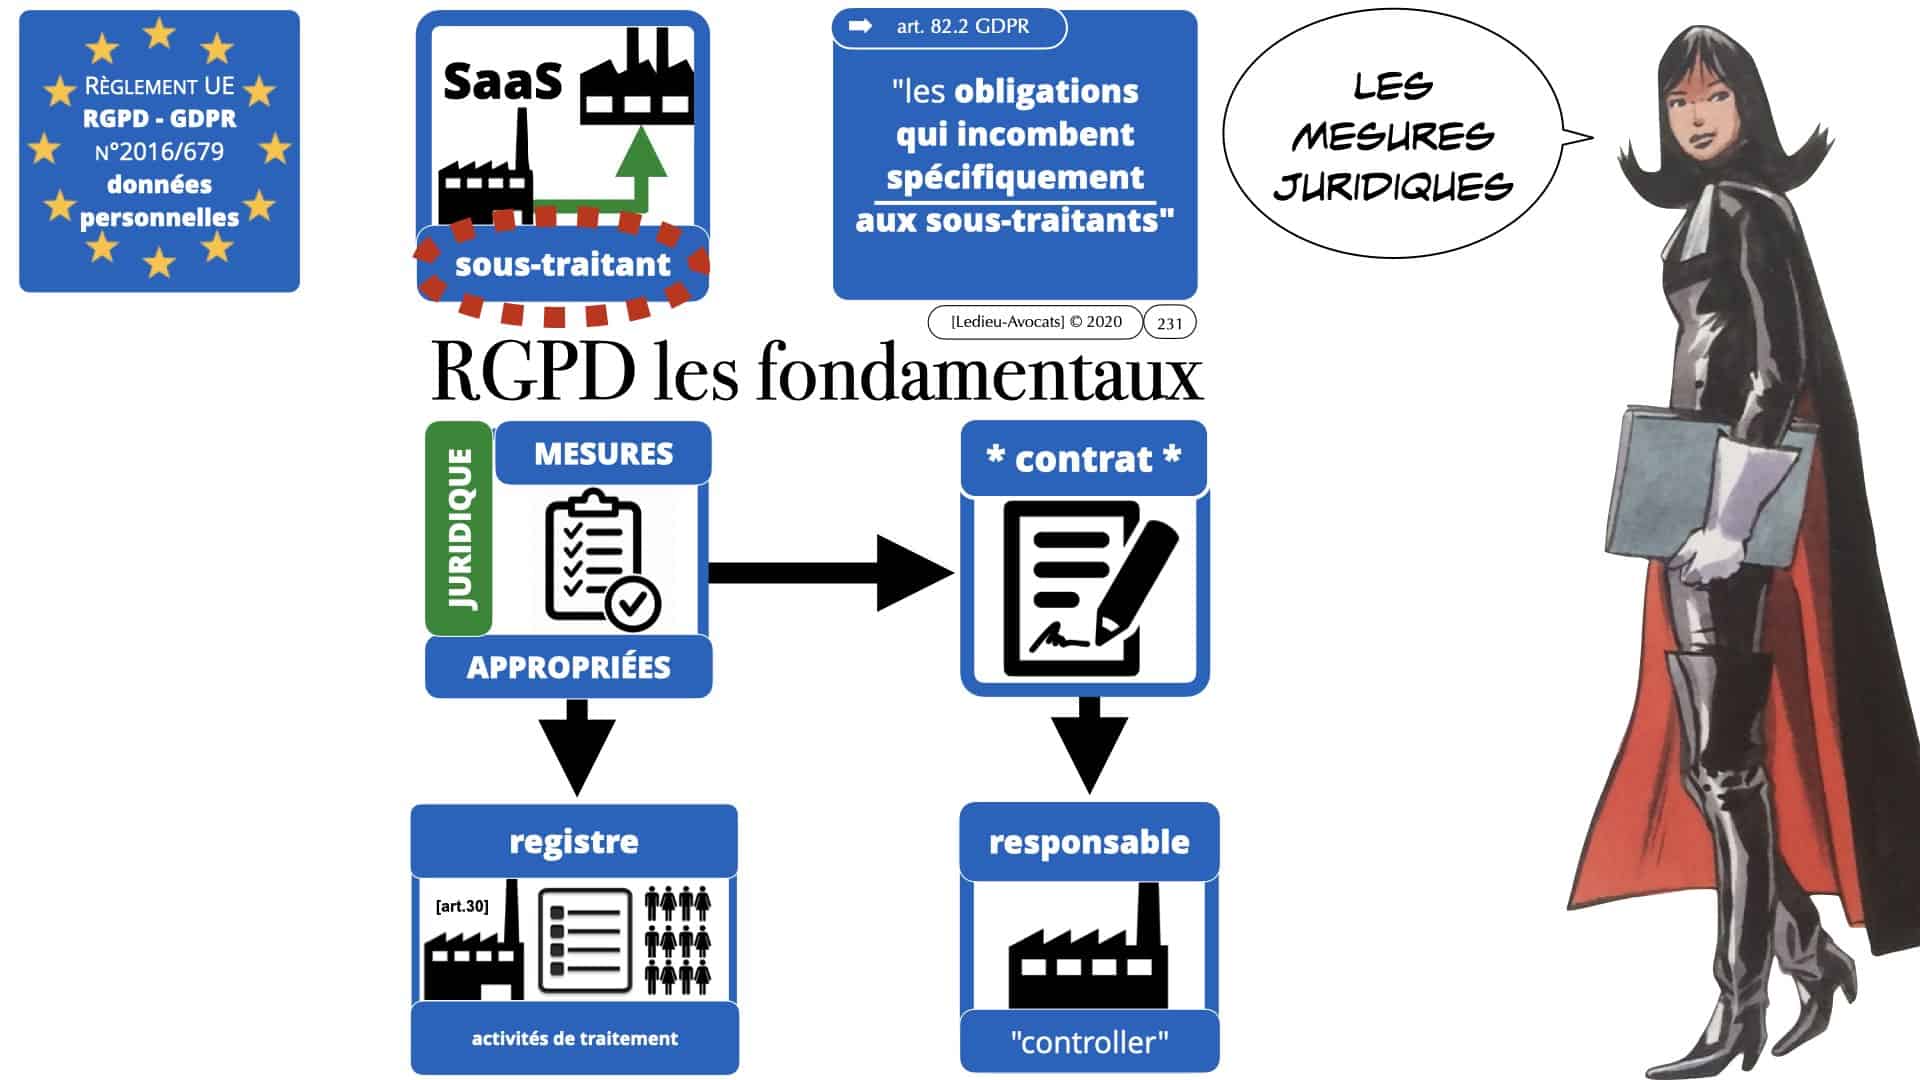 RGPD e-Privacy données personnelles jurisprudence formation Lamy Les Echos 10-02-2021 ©Ledieu-Avocats.231